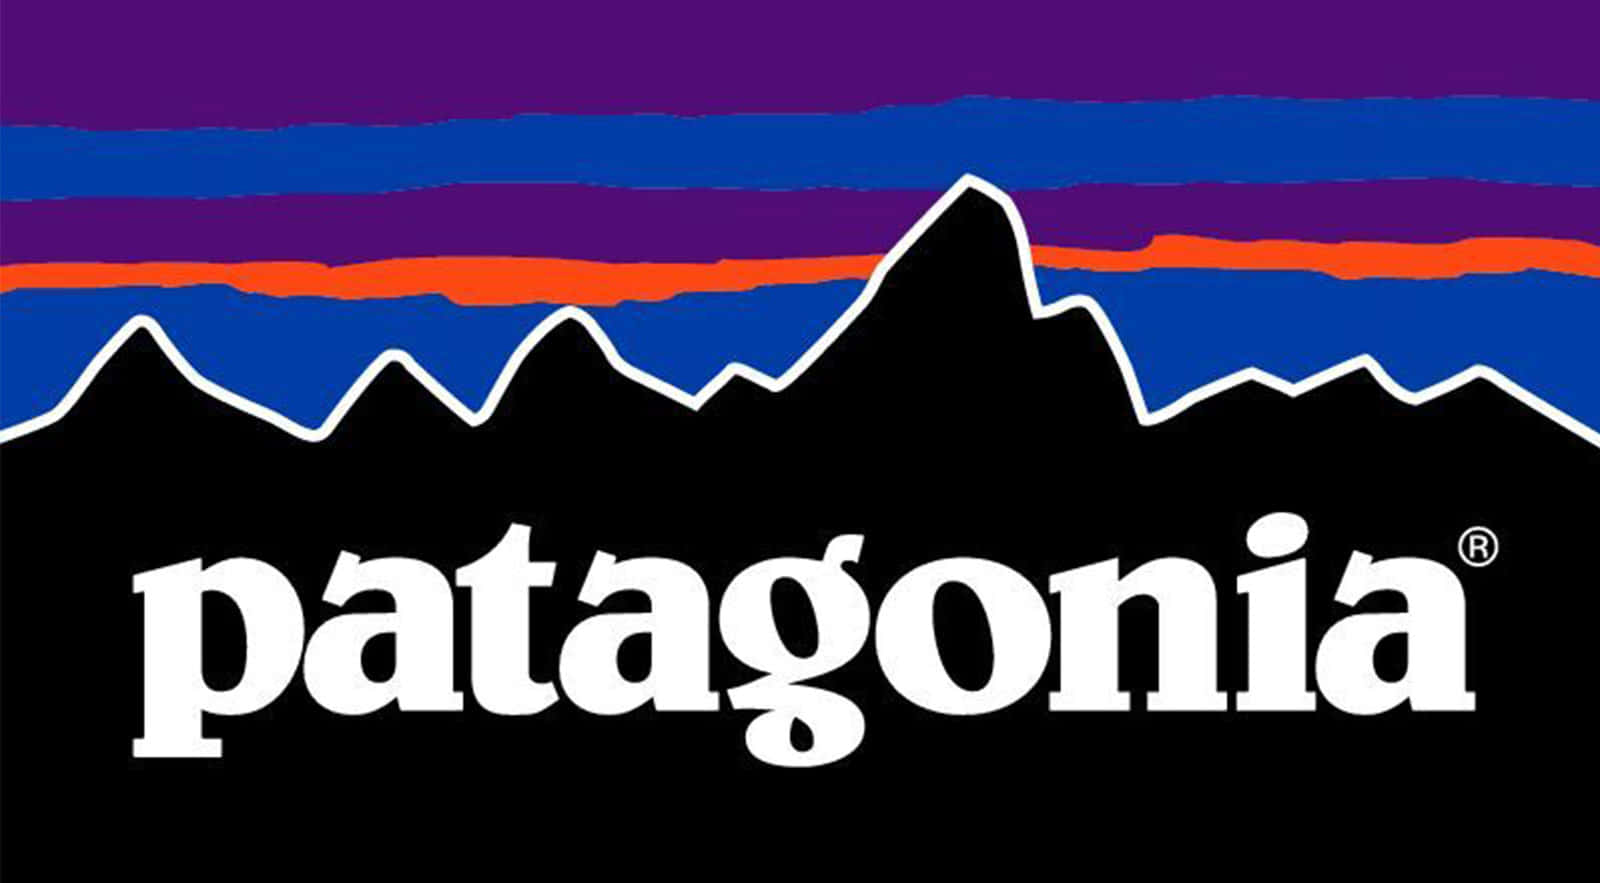 Bakgrundsbildmed Patagonias Logotyp